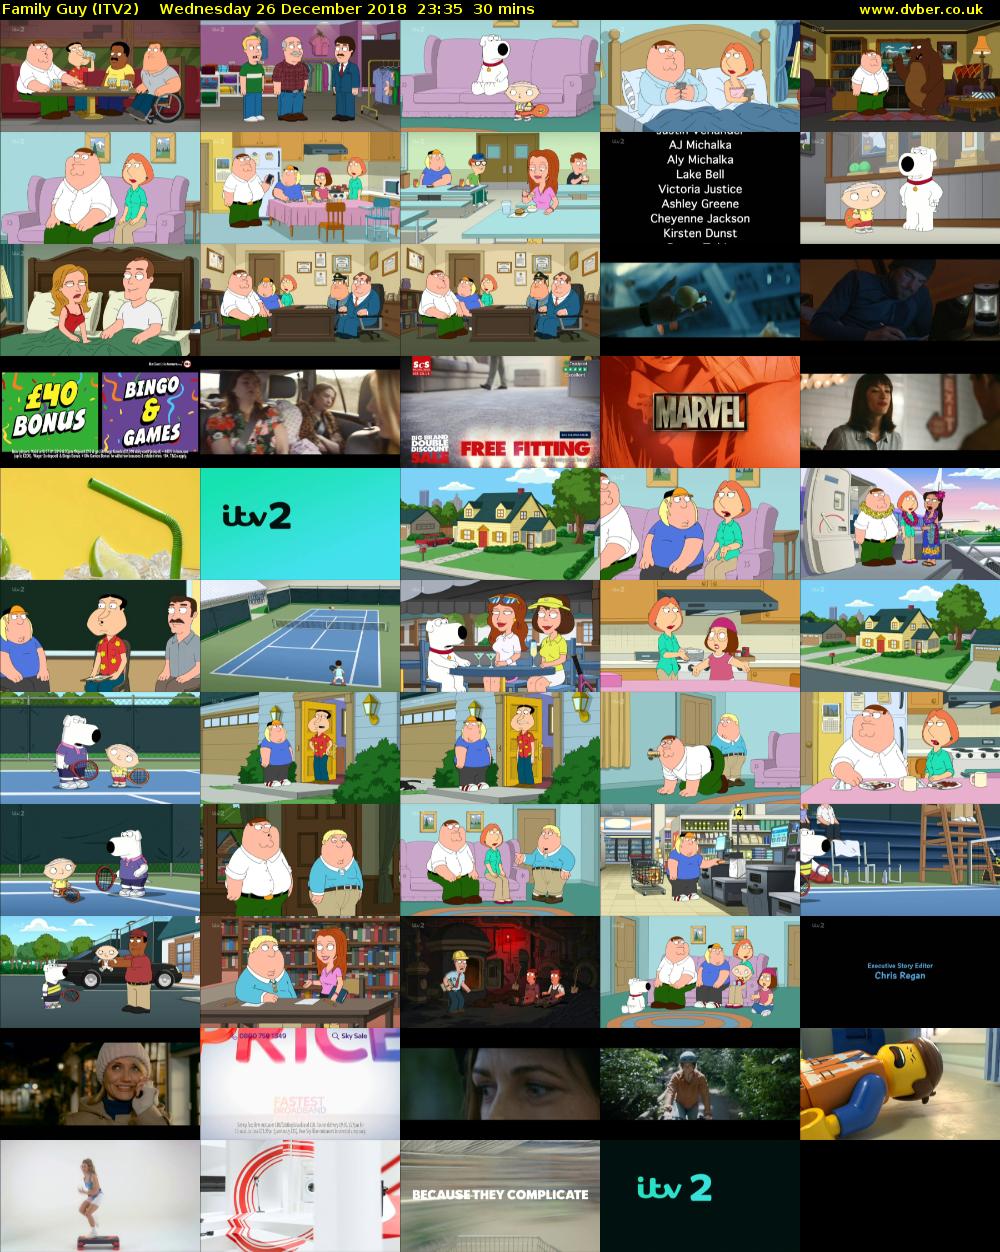 Family Guy (ITV2) Wednesday 26 December 2018 23:35 - 00:05